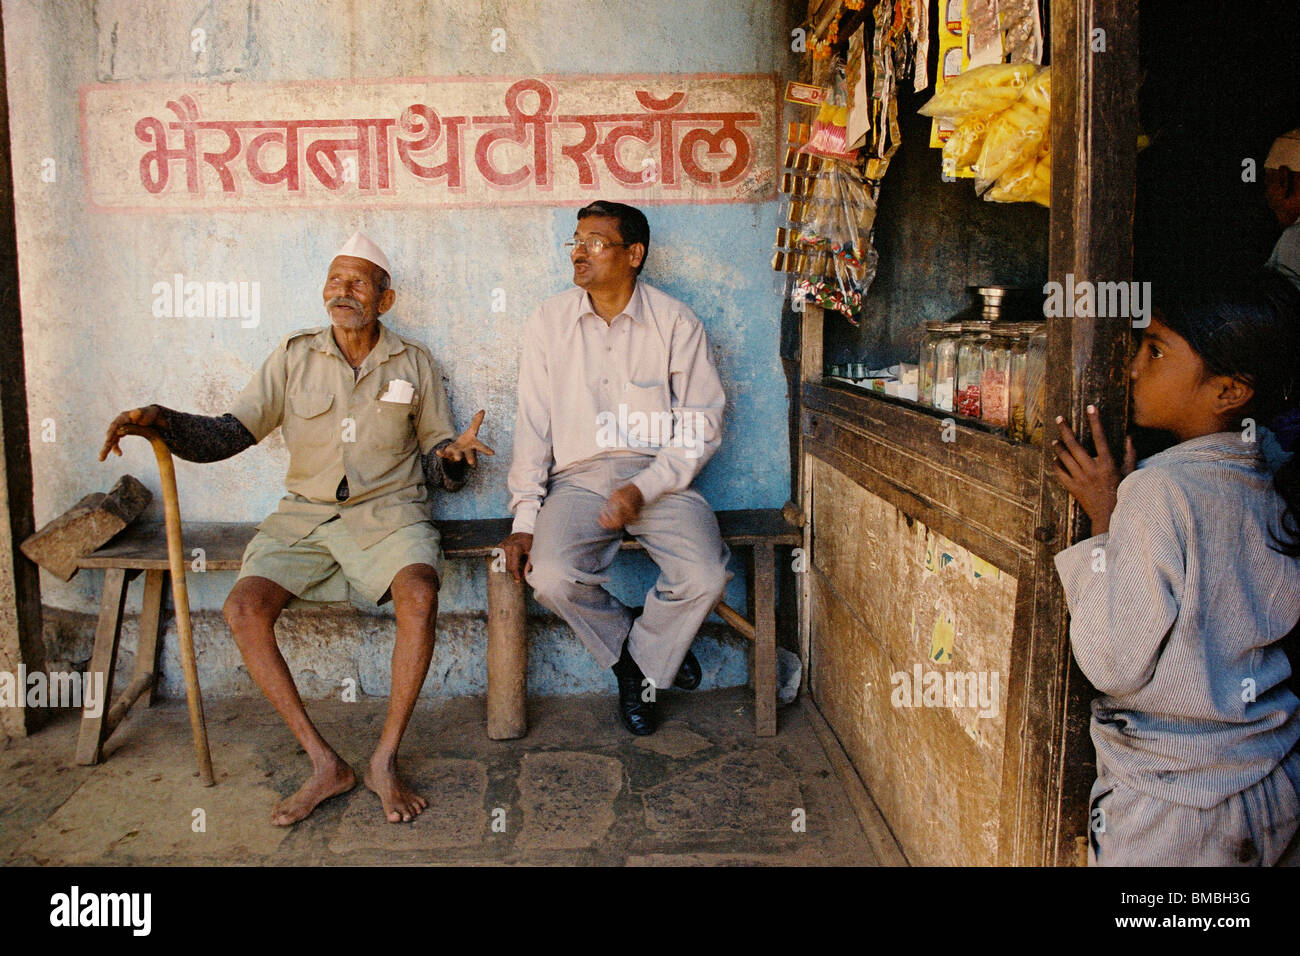 Deux hommes ayant une conversation dans un magasin de thé dans la ville de Panchgani, dans la région des Ghats occidentaux, dans l'État de Maharashtra, en Inde. Banque D'Images